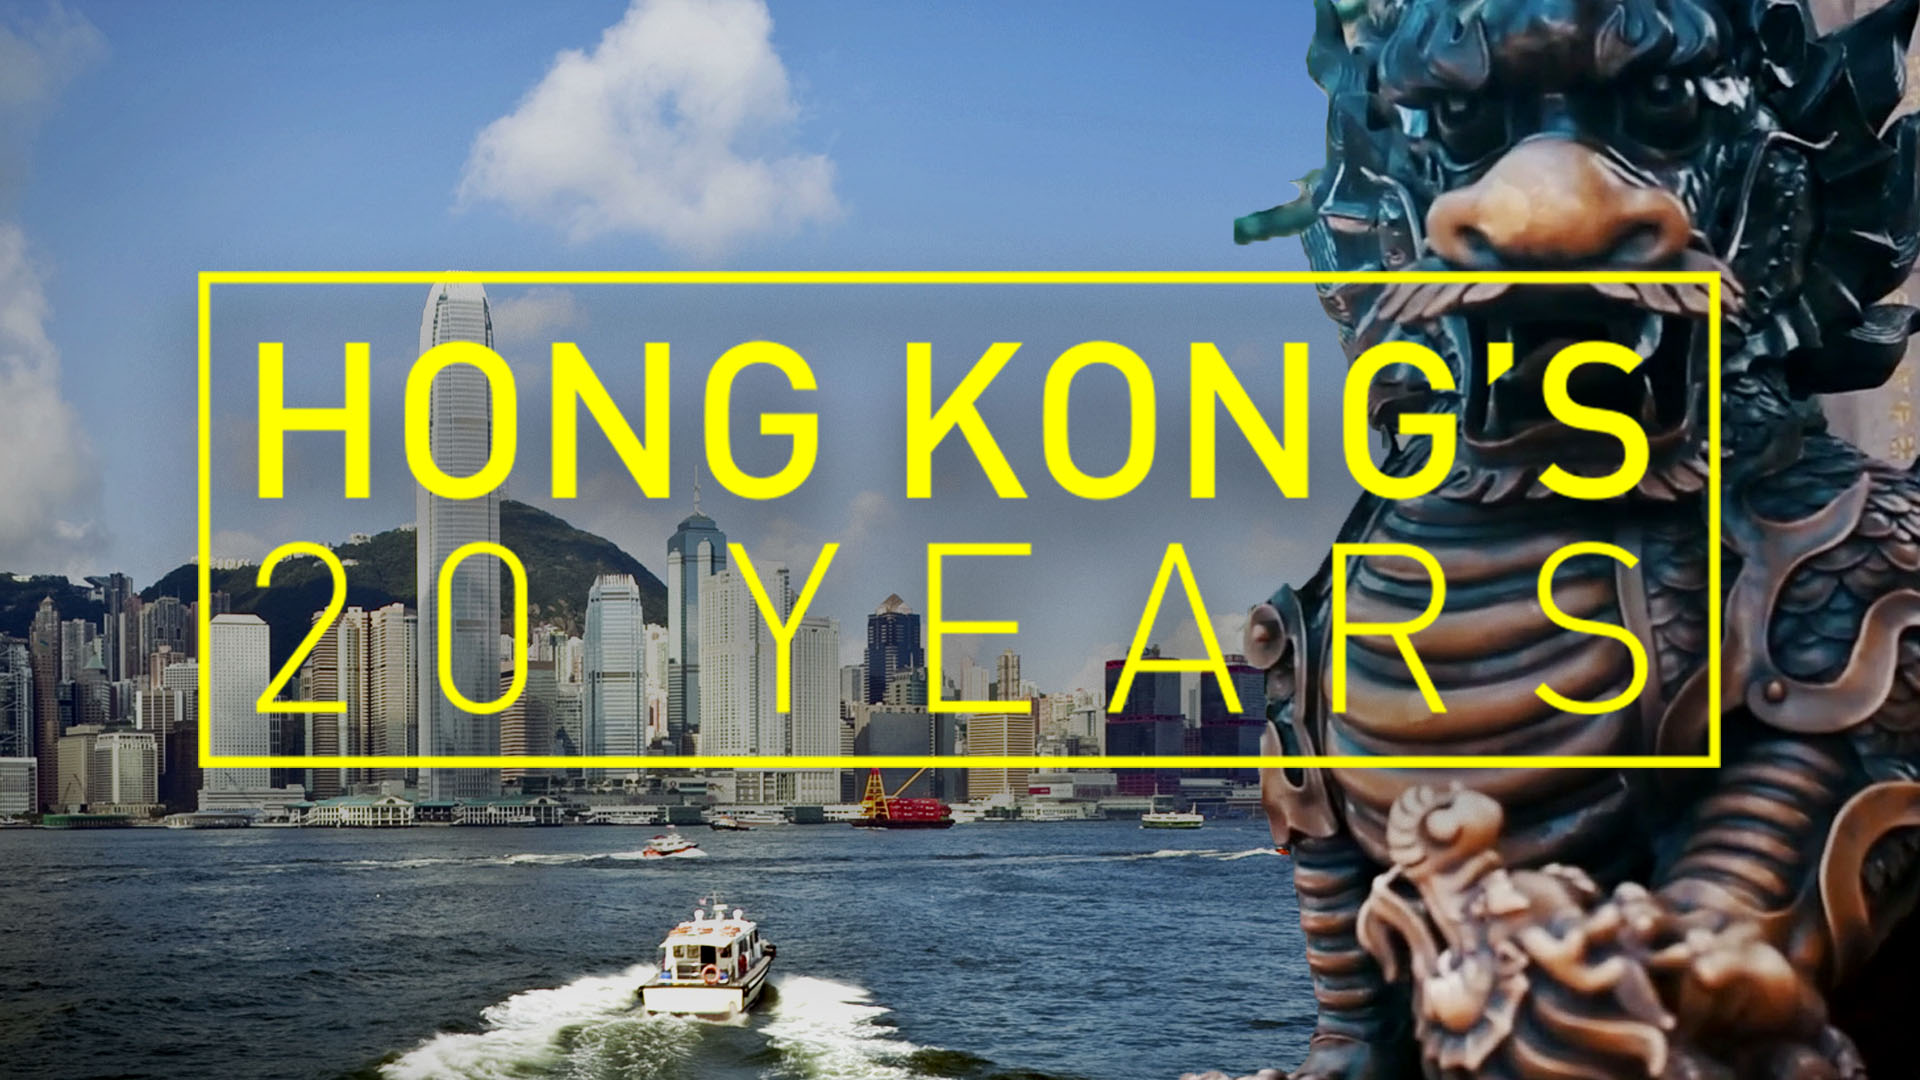 Hong Kong's 20 years